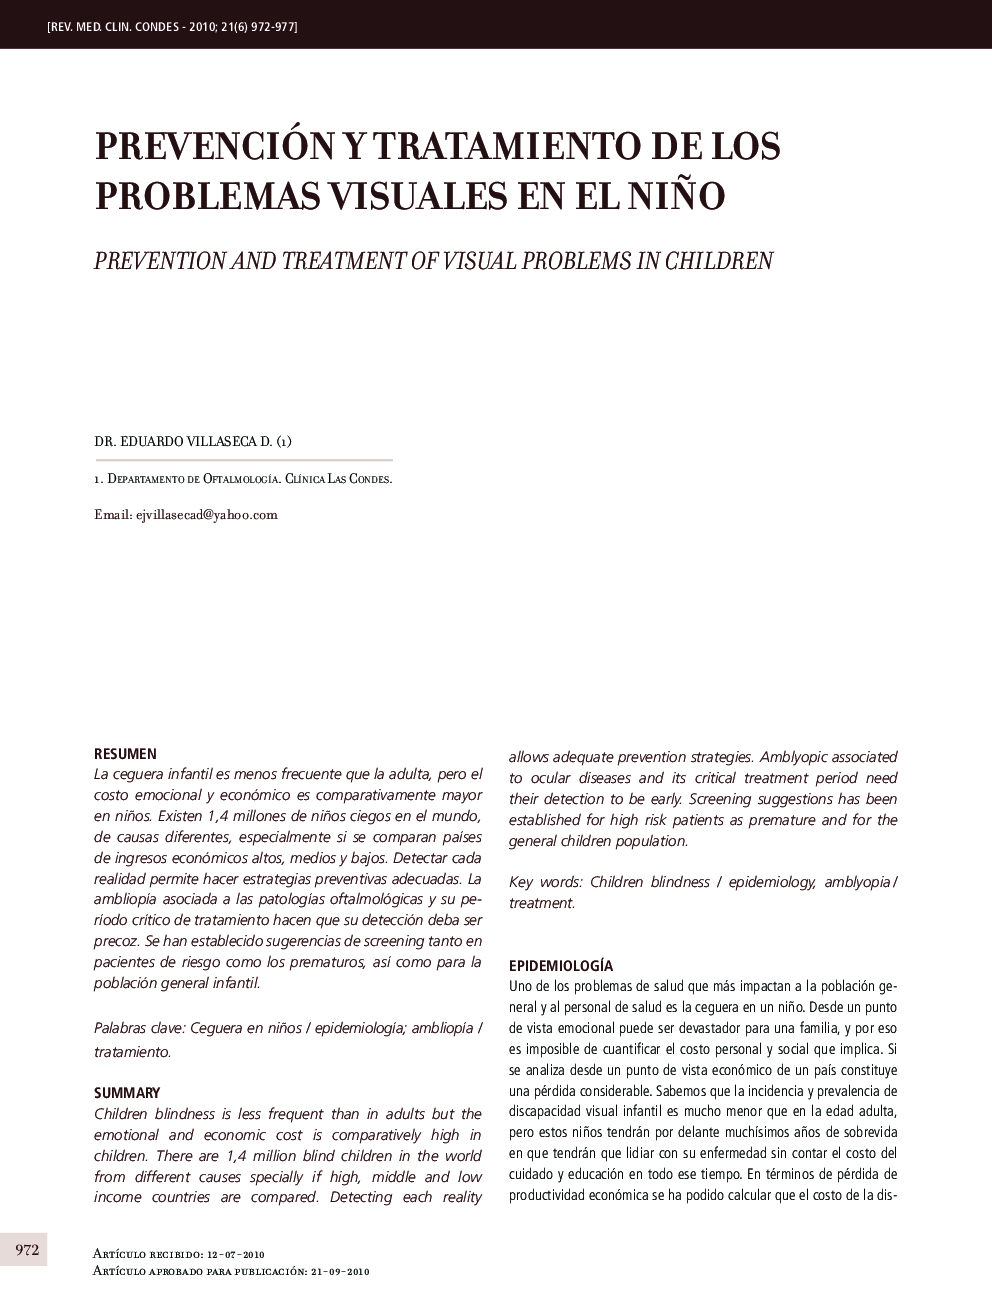 Prevención y tratamiento de los problemas visuales en el niño